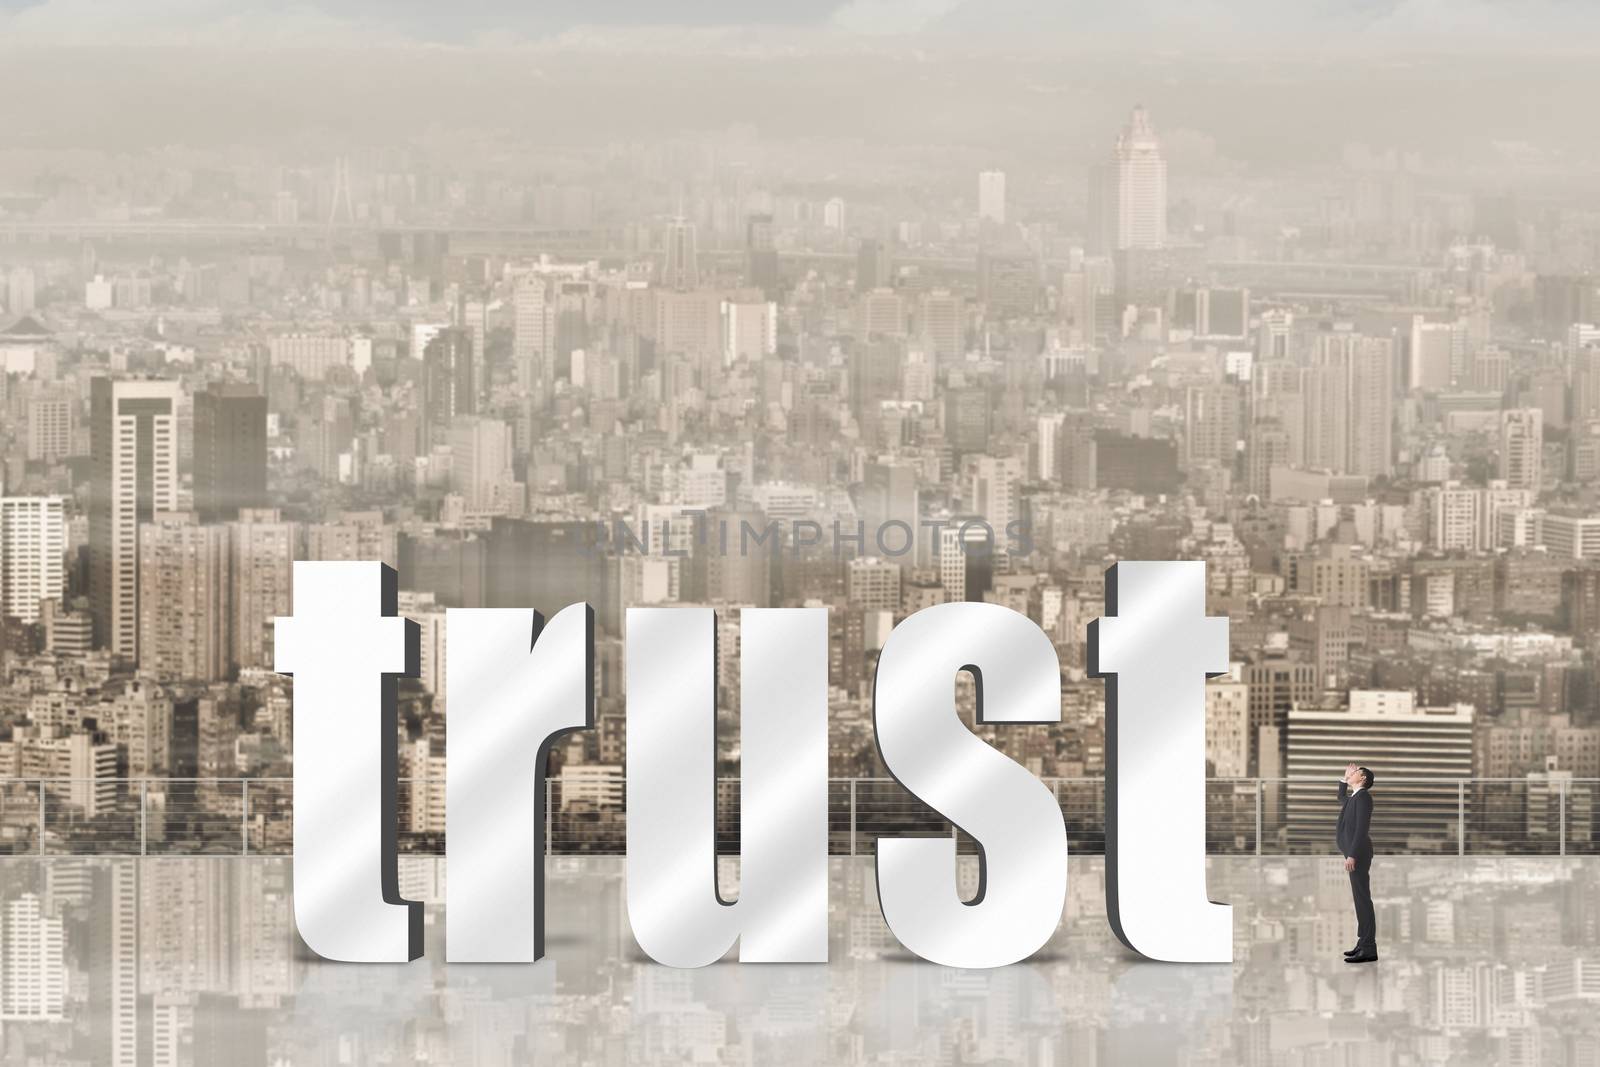 Concept of trust by elwynn